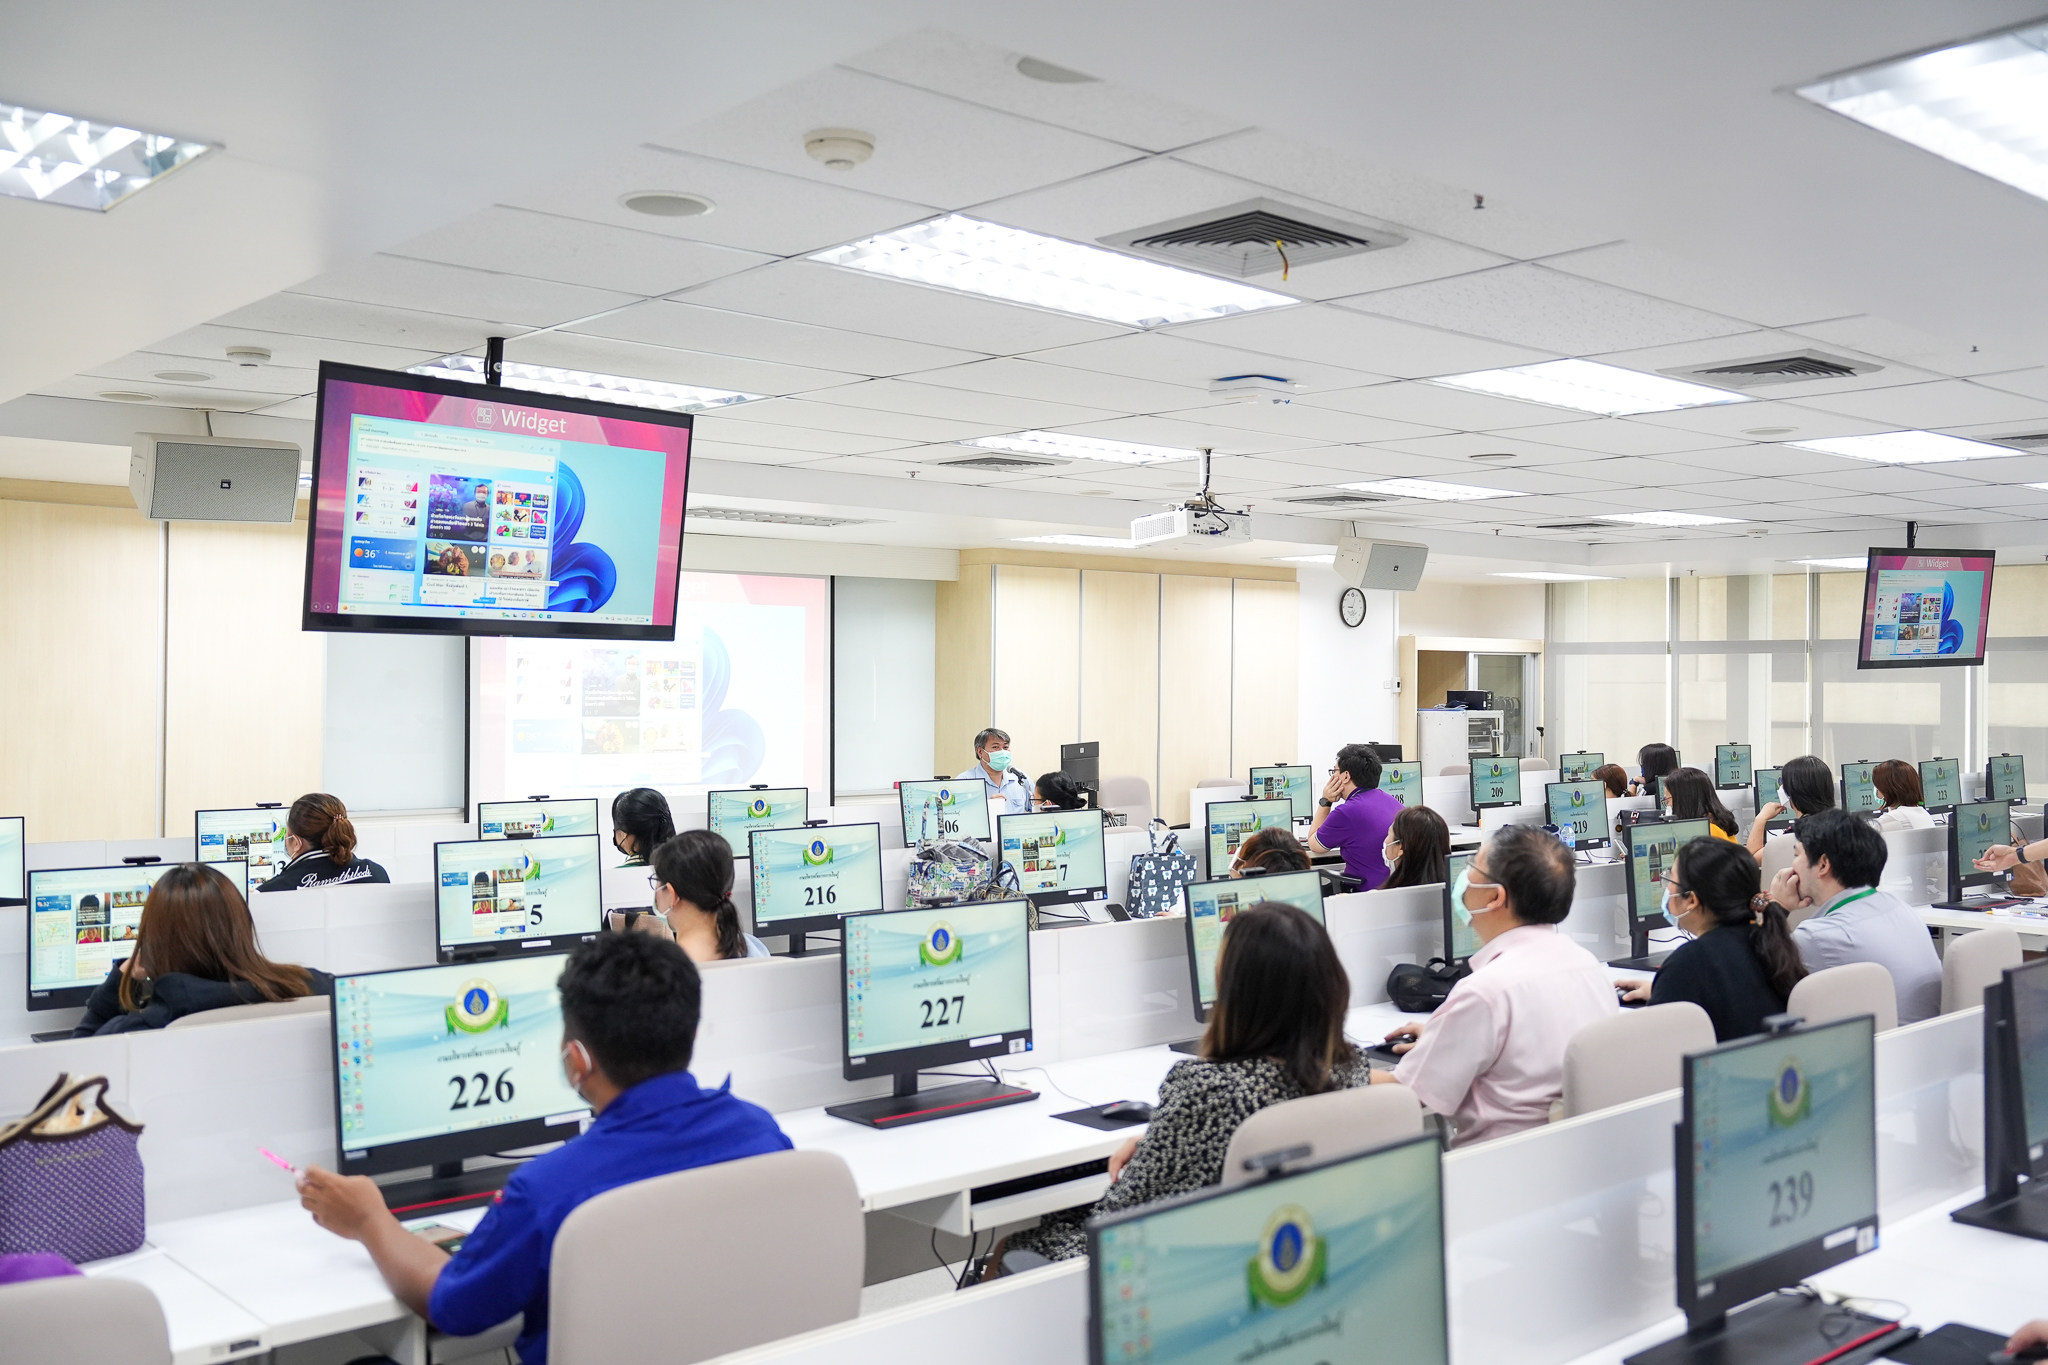 โครงการอบรม “Windows 11 Enterprise Training – Basics to Advance Level” สำหรับบุคลากร